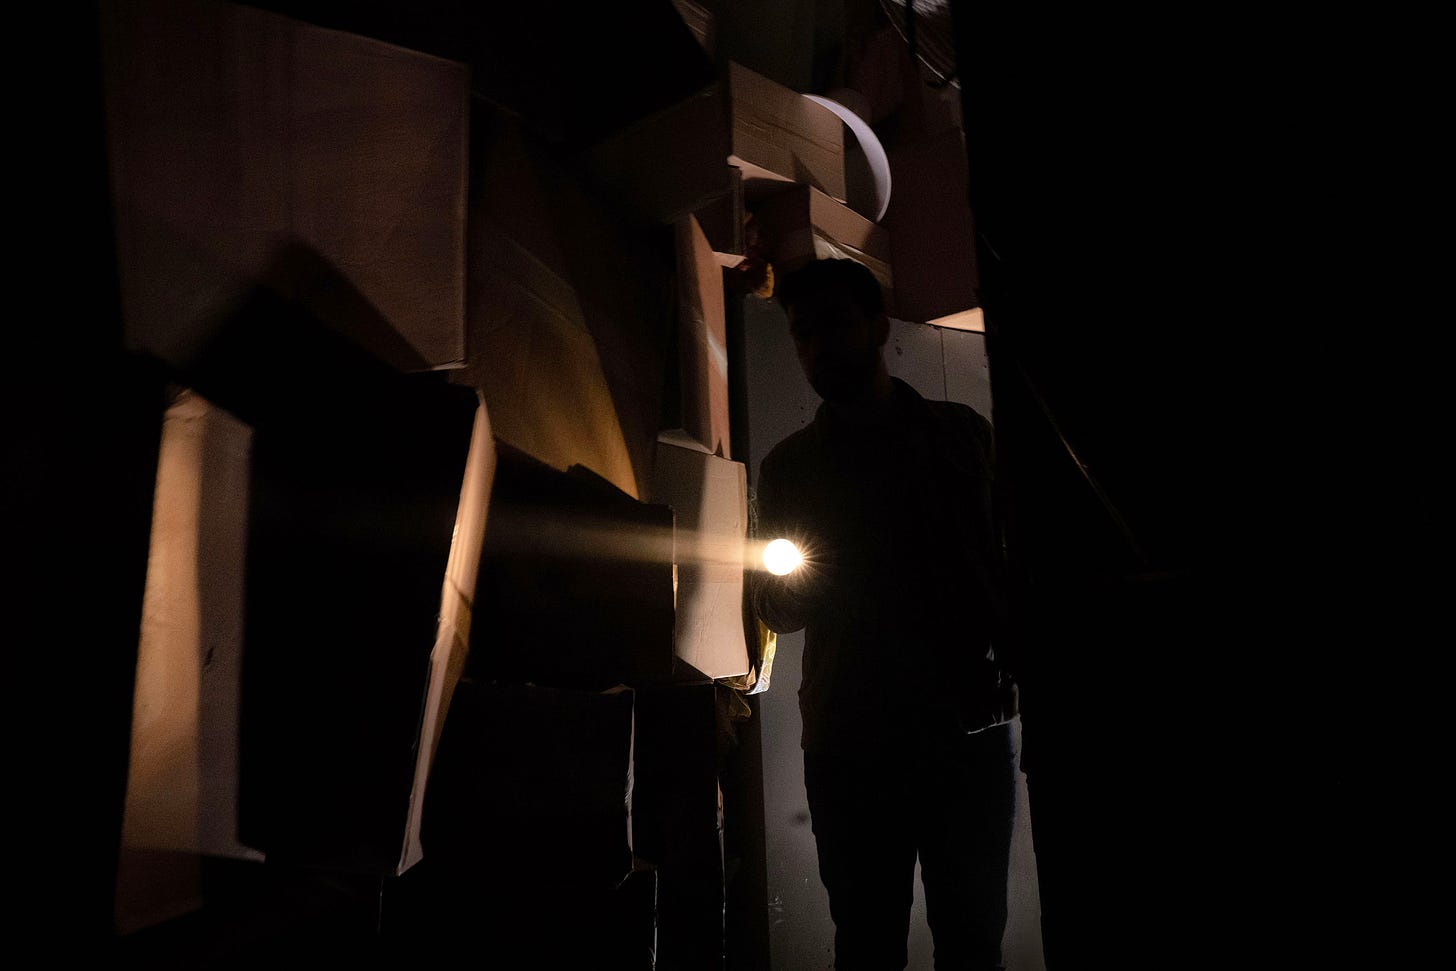 A person shines a torch through a corridor of boxes